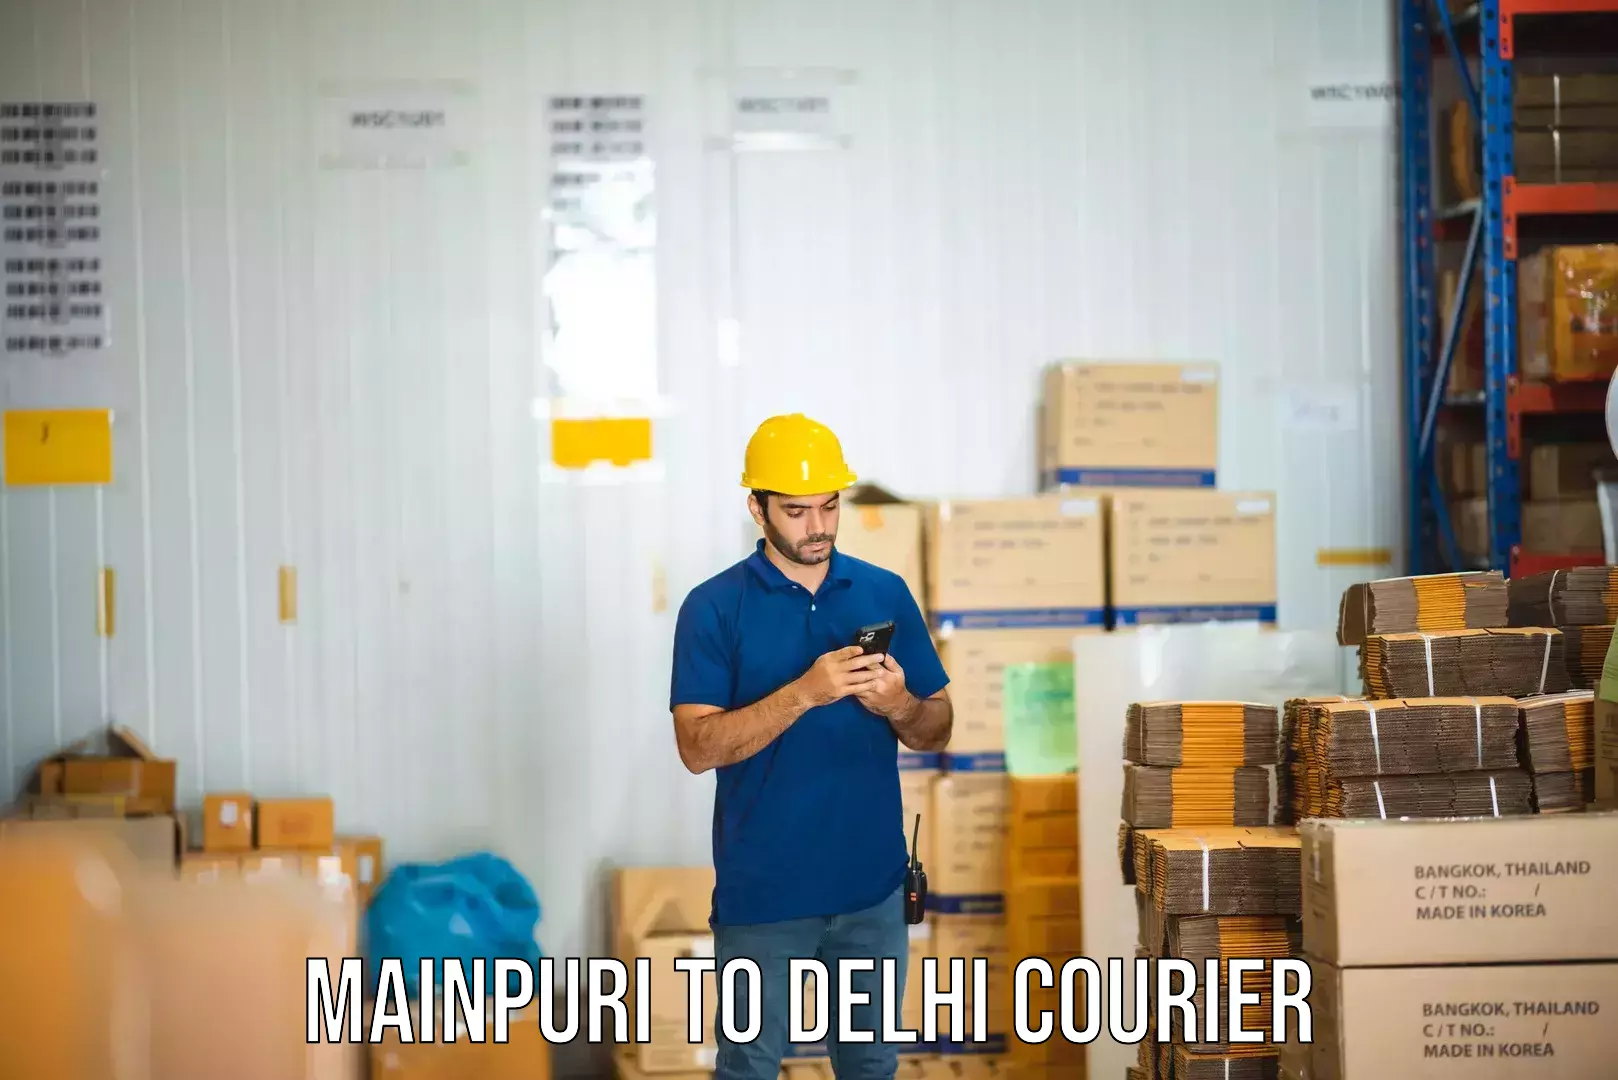 Express courier capabilities Mainpuri to Jawaharlal Nehru University New Delhi